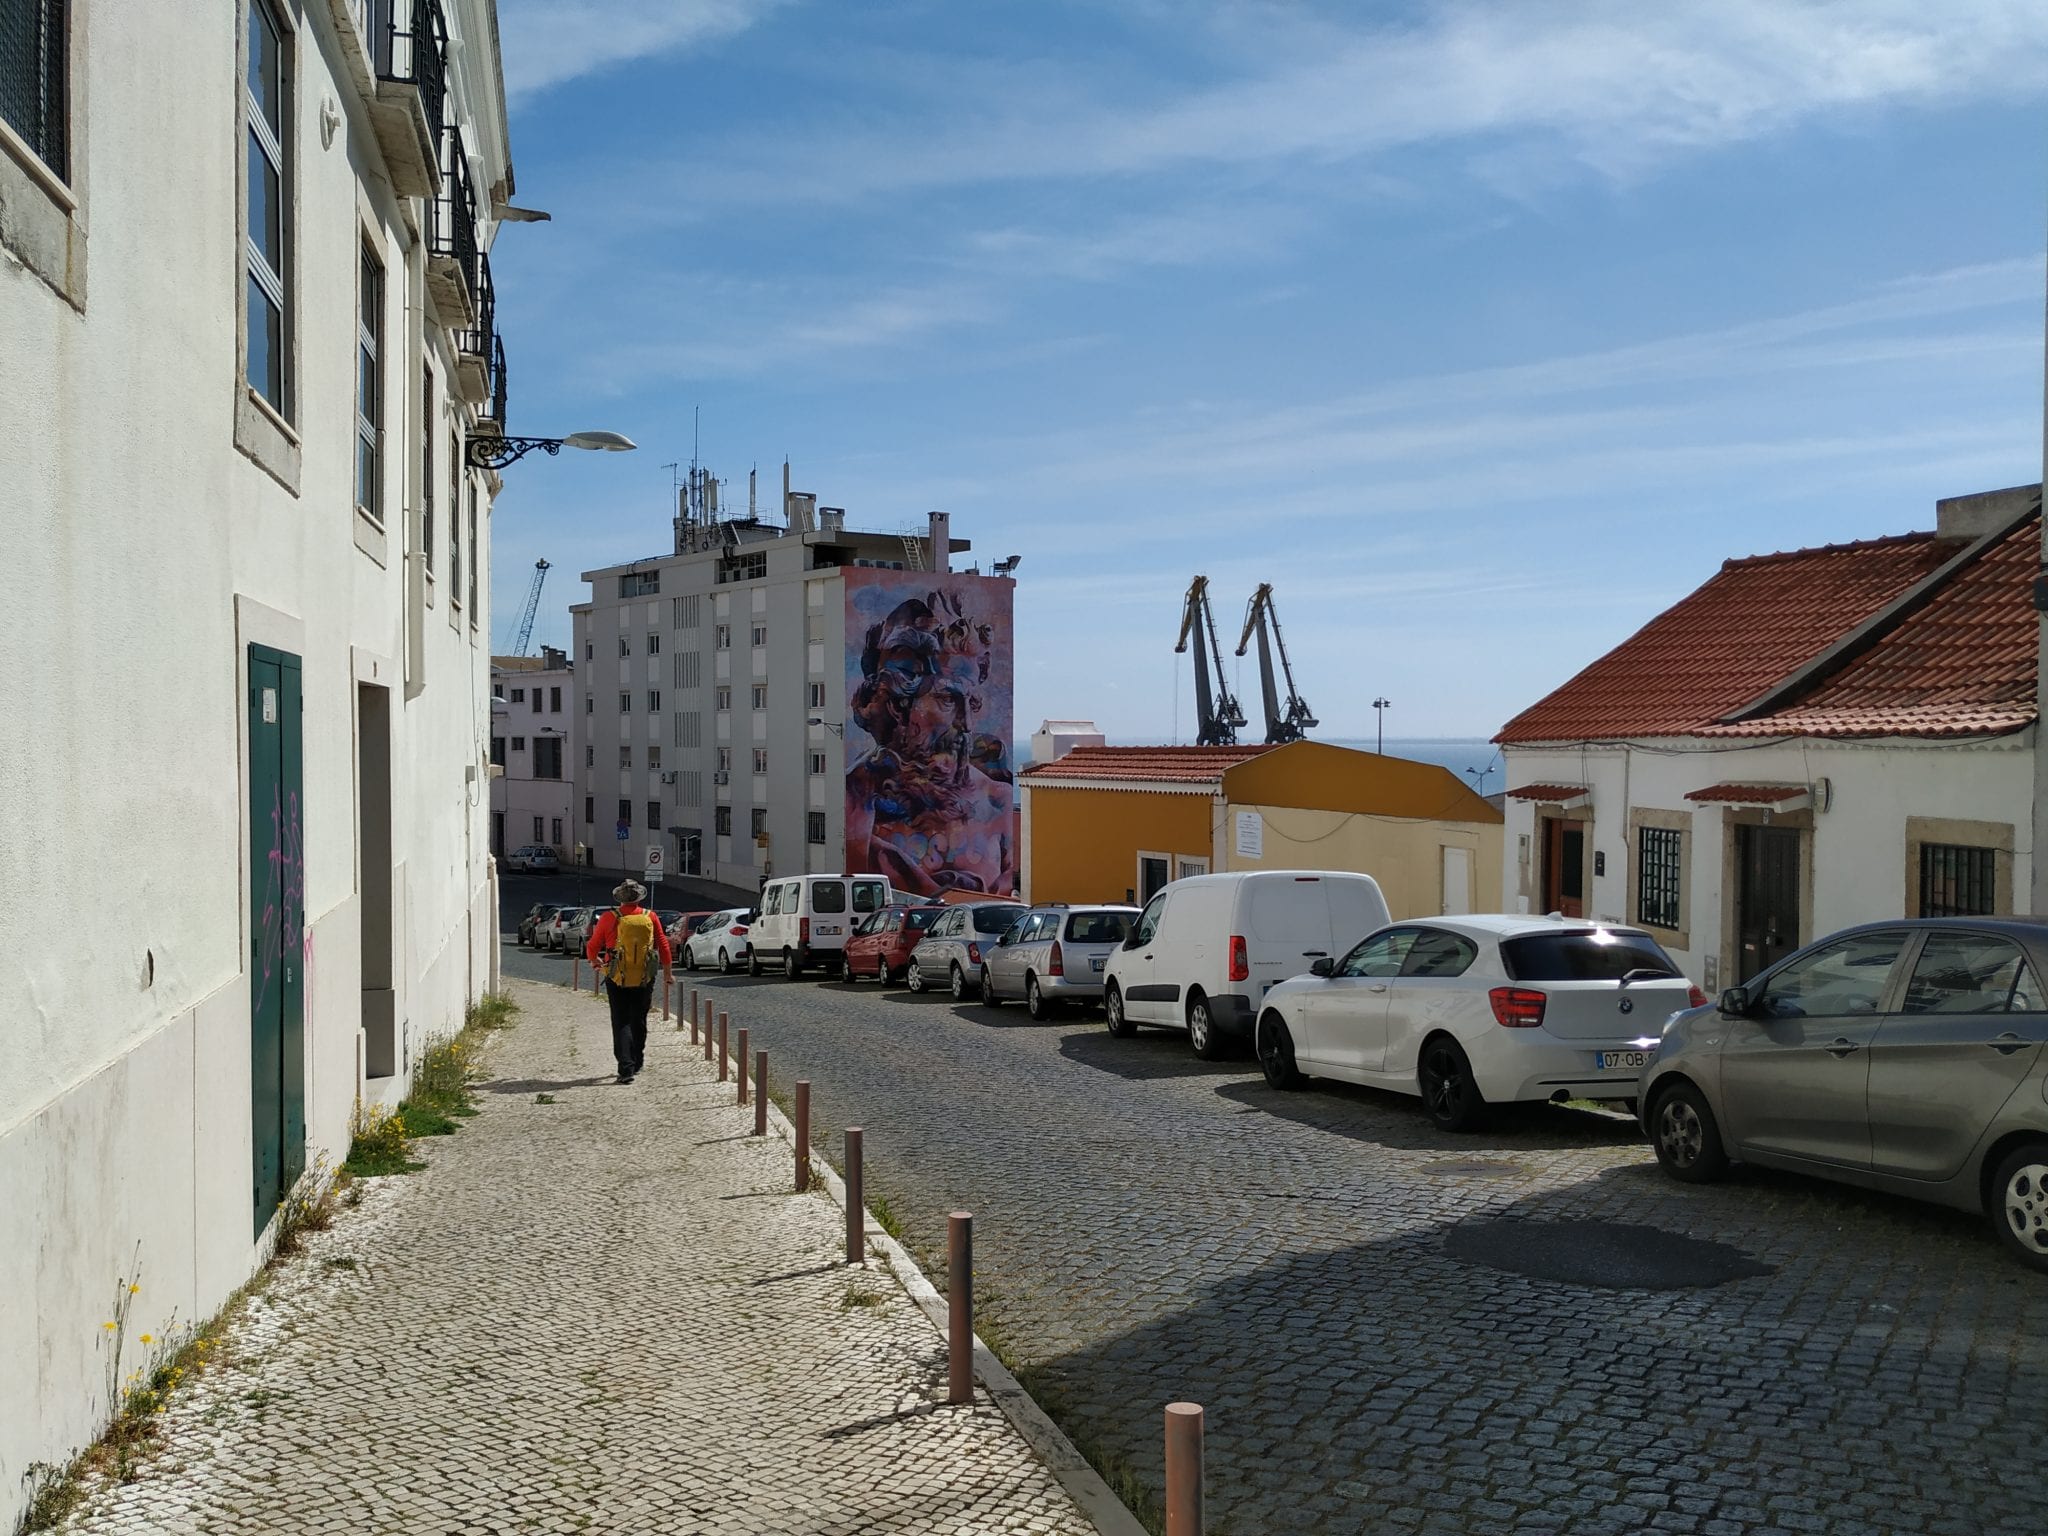 Terminal de Cruzeiros de Lisboa recebe milhares de turistas, mas em alguns dos bairros à volta quase não se nota